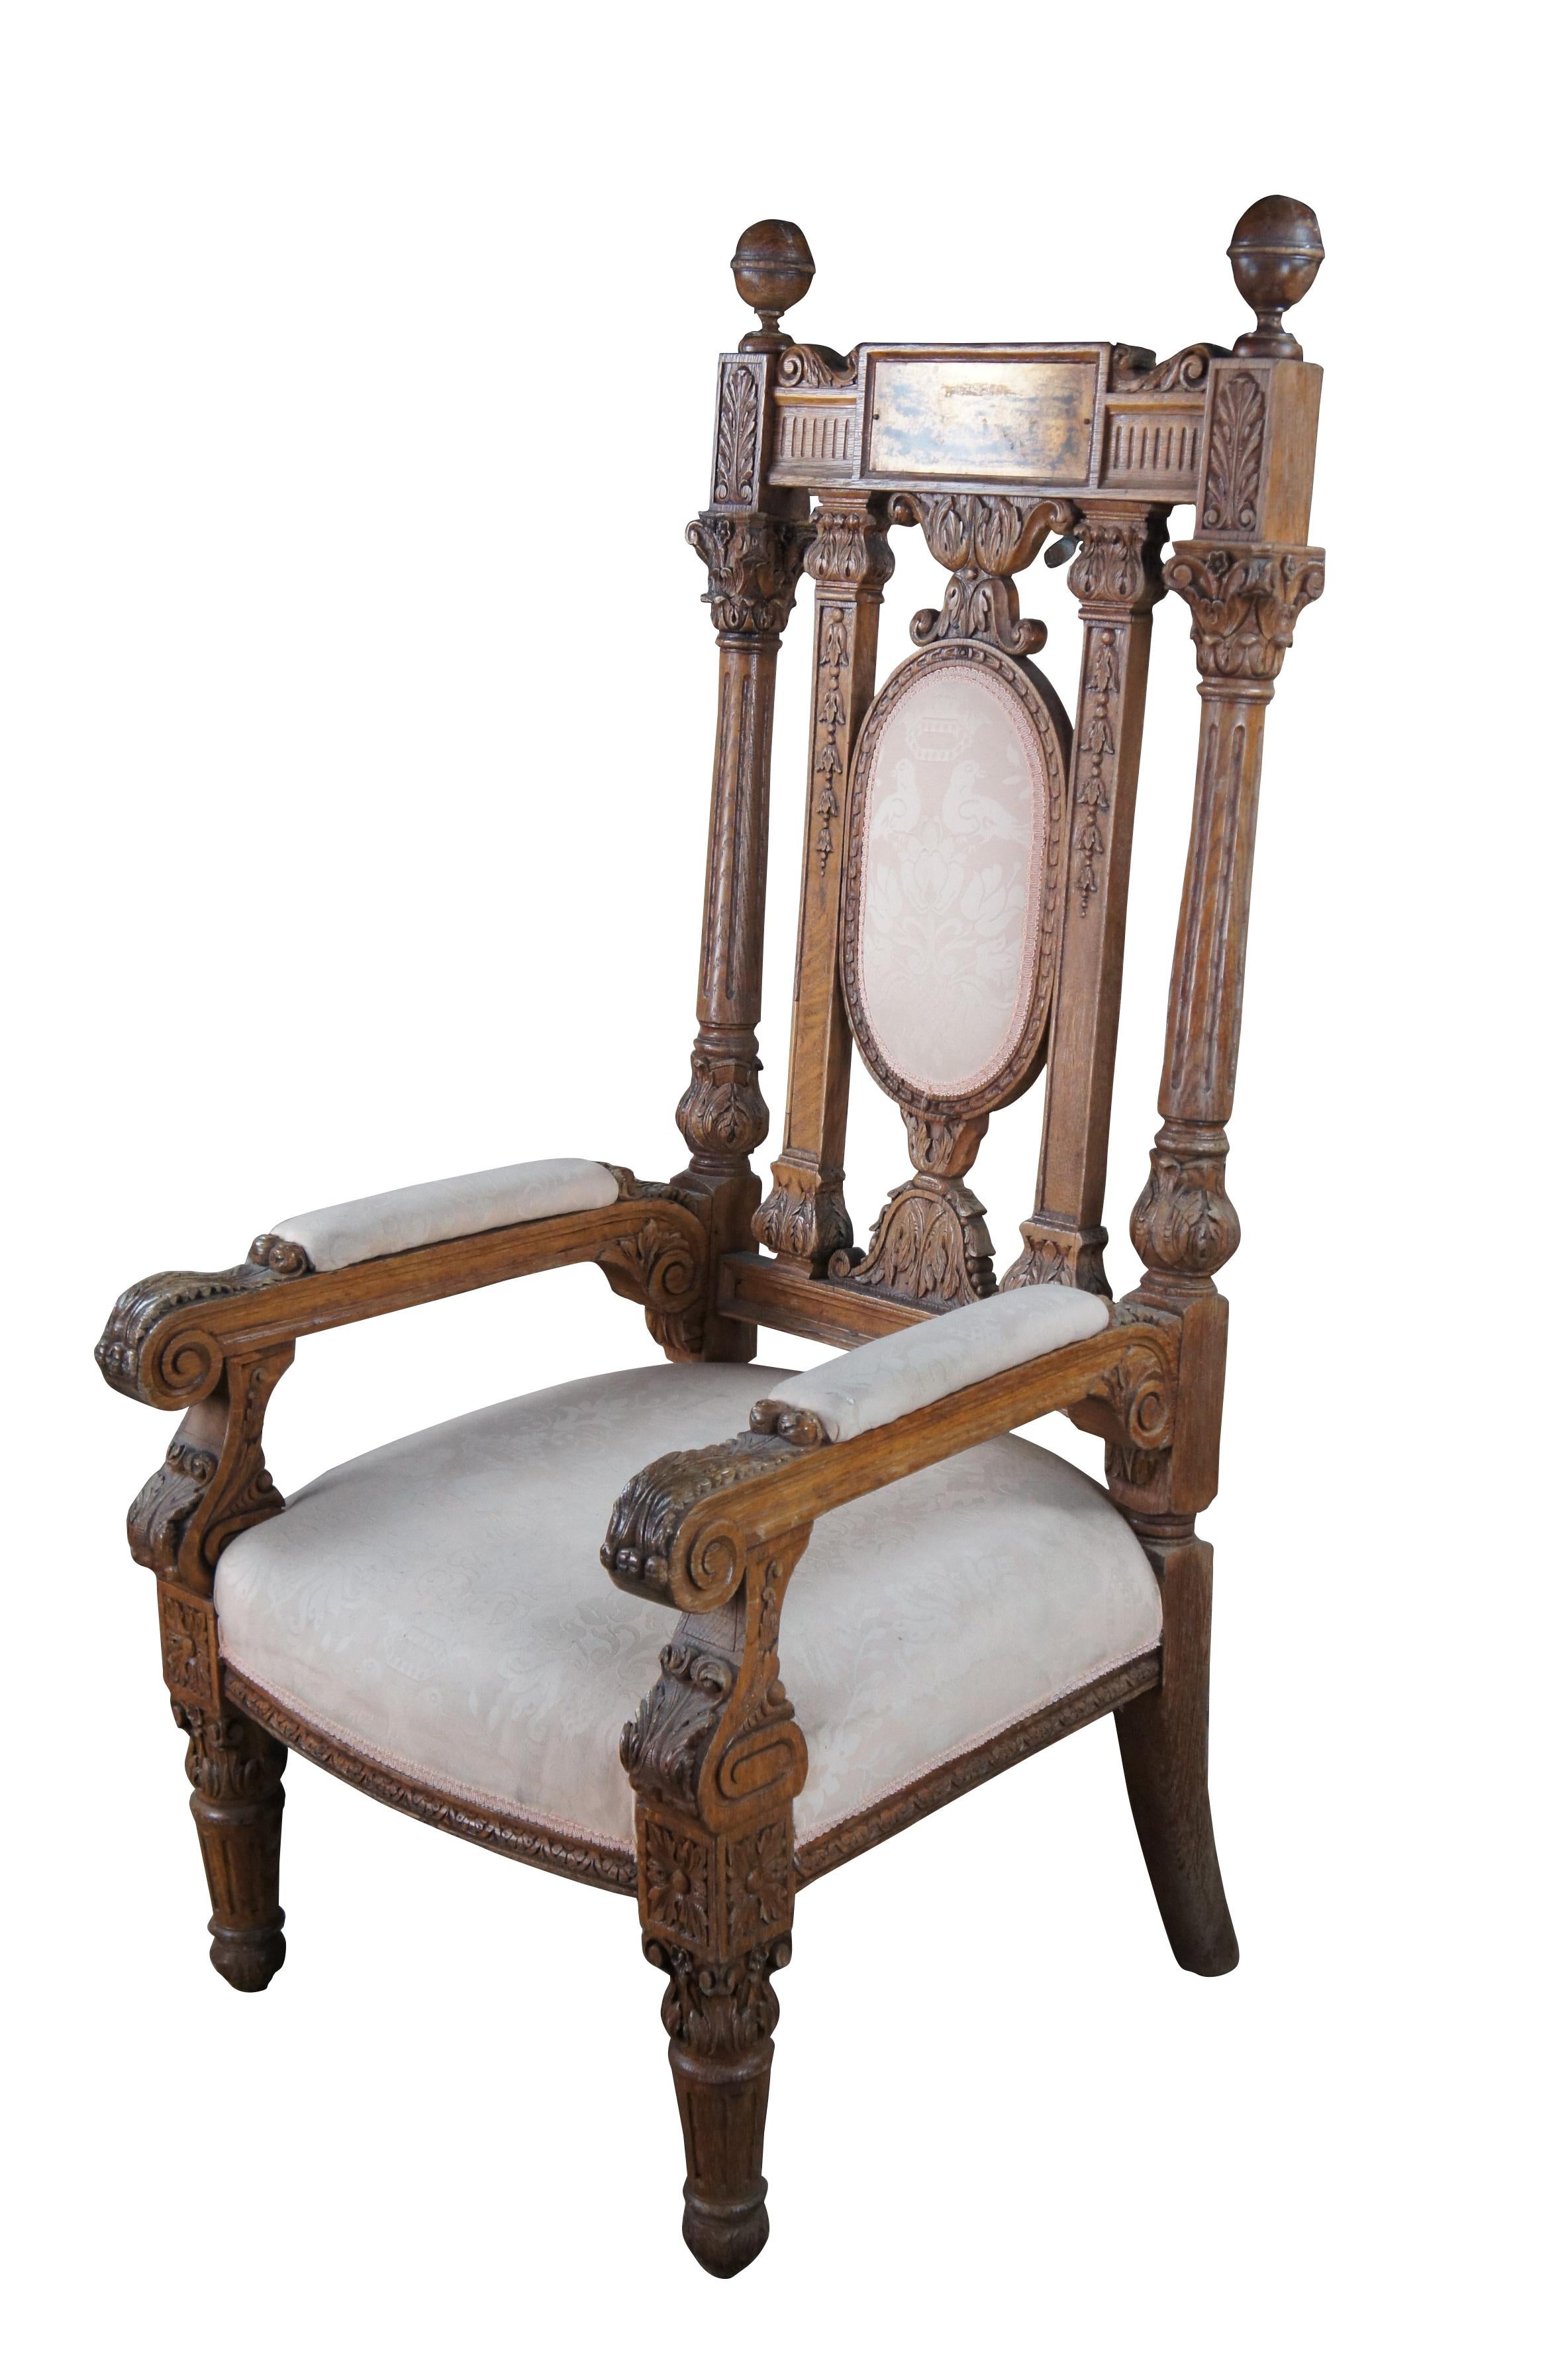 Monumental fauteuil trône victorien antique.  Fabriqué en chêne, il est orné d'un motif réticulé et d'un motif floral hautement sculpté.  La crête est ornée de grands fleurons tournés qui encadrent une plaque nominative en laiton située au-dessus de